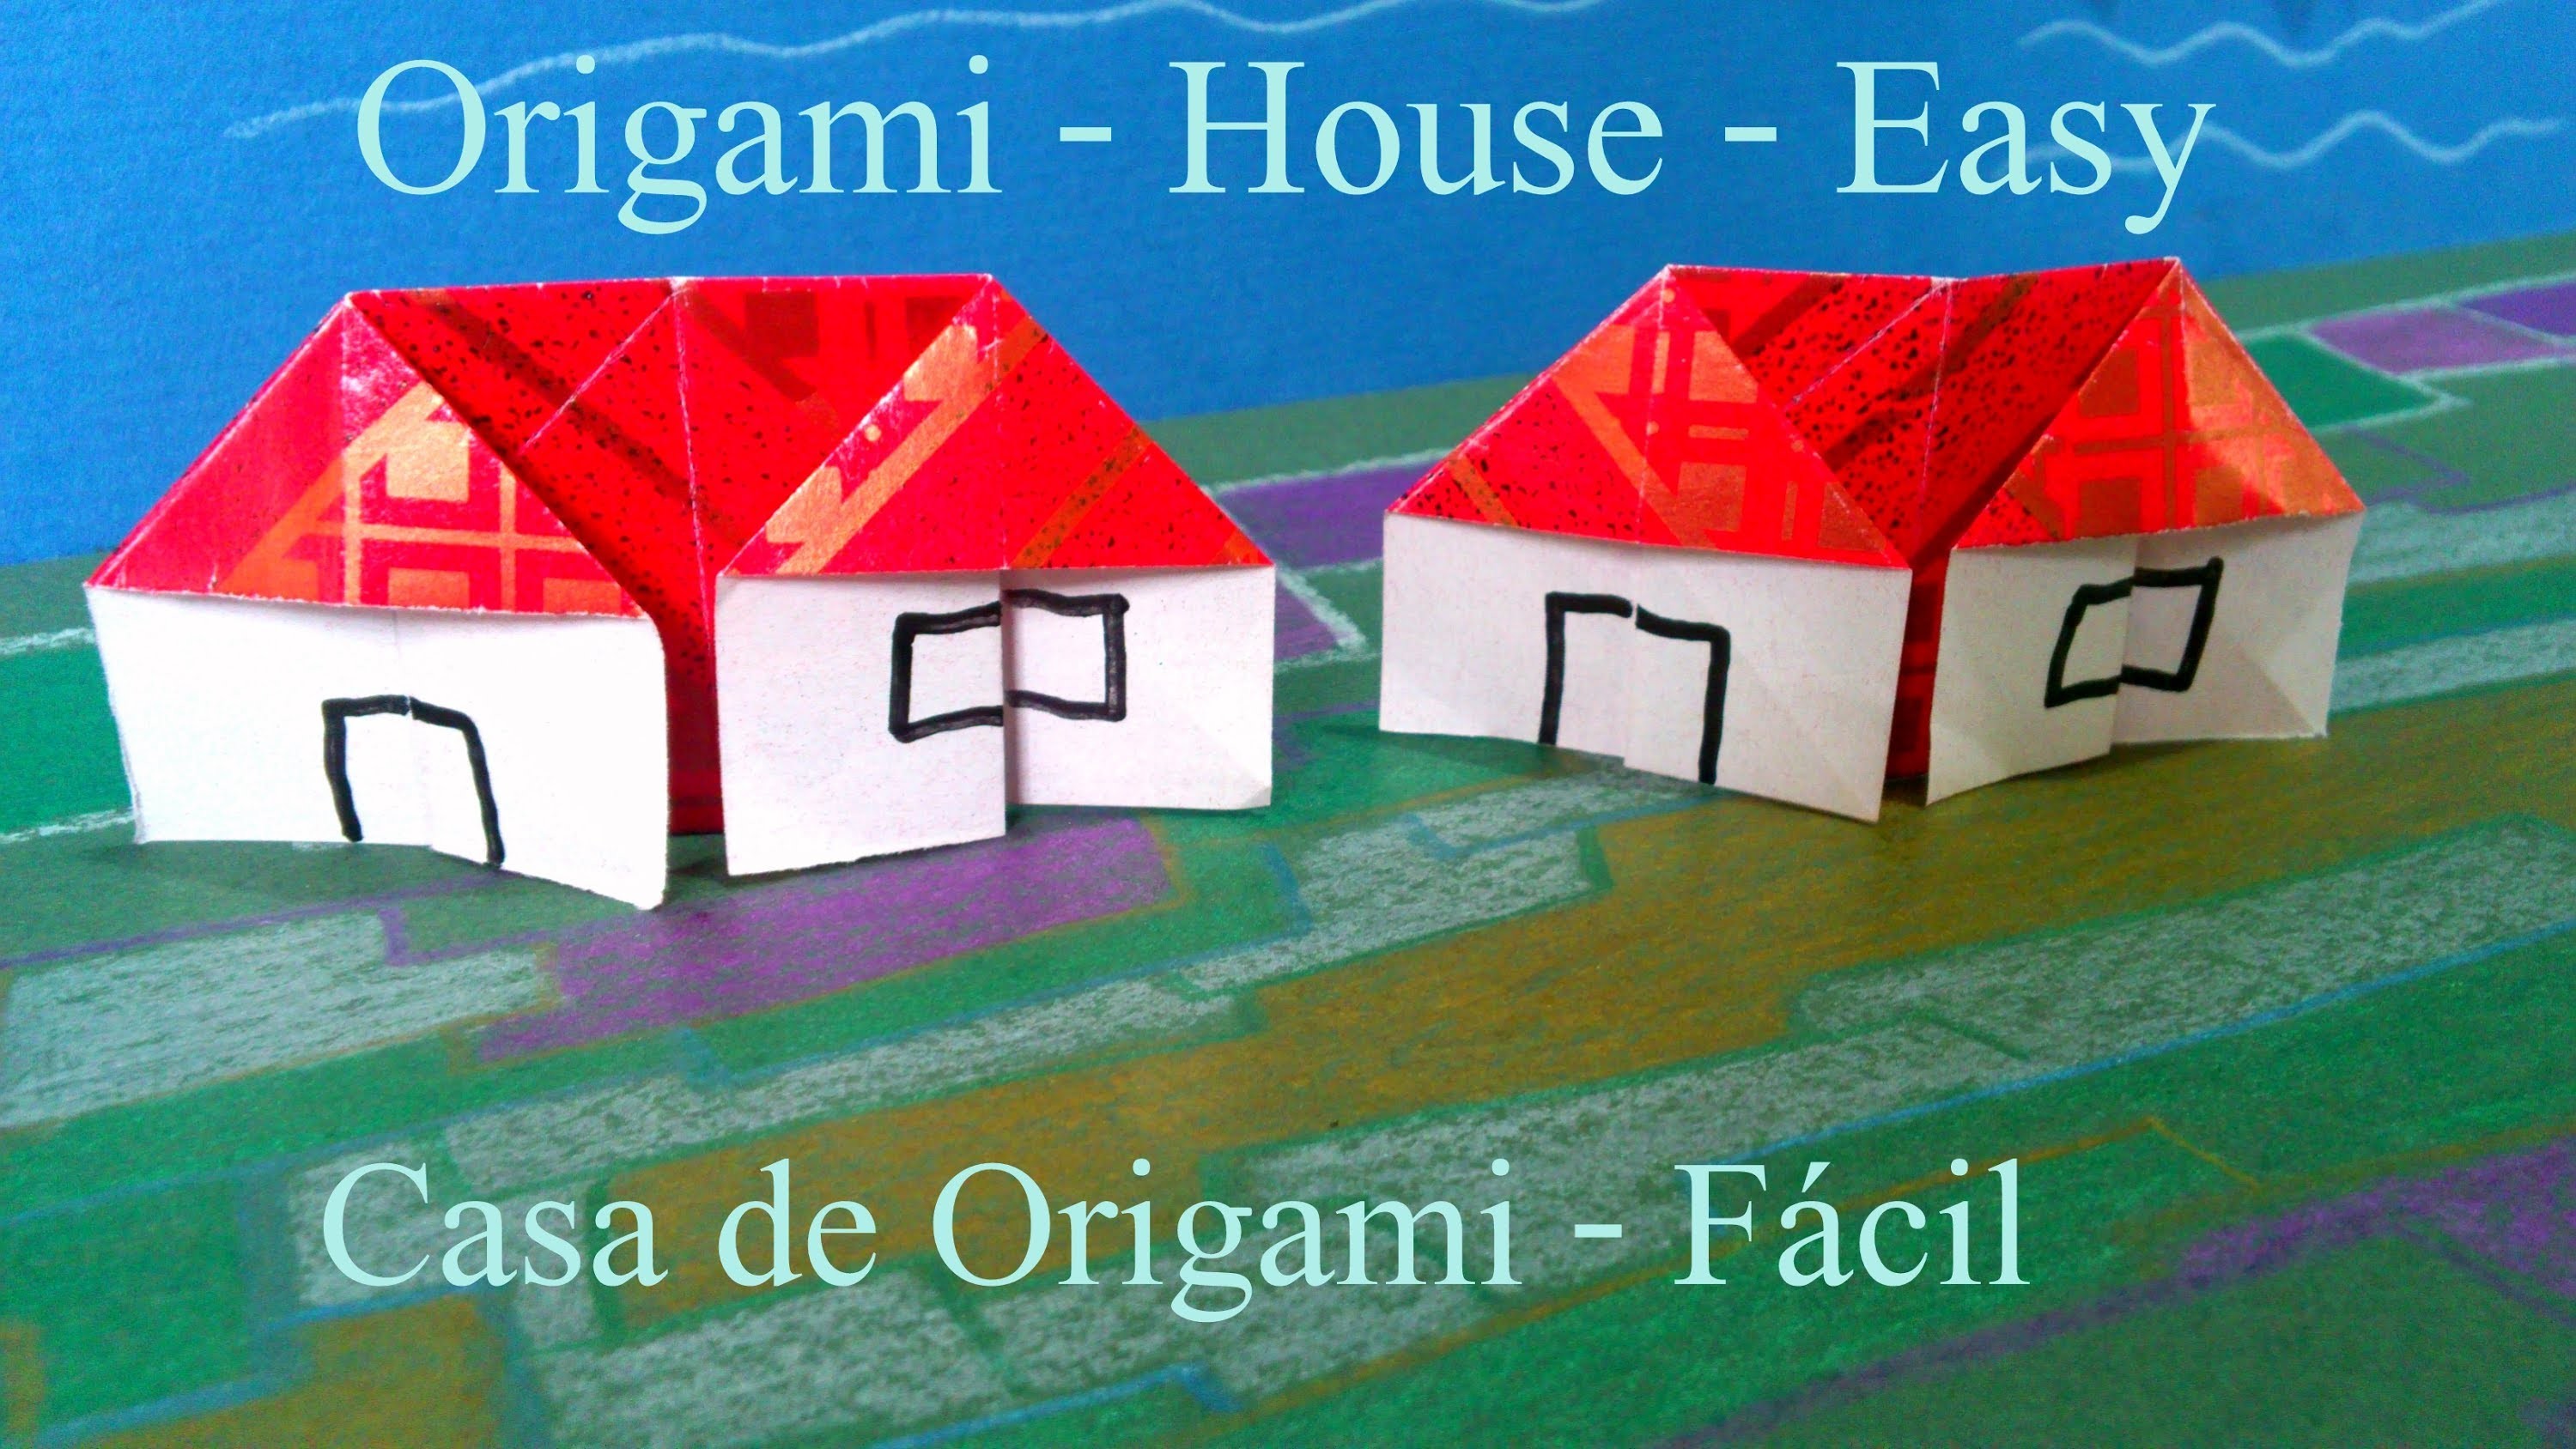 Como Fazer uma CASA de Origami fácil - Dobradura de Papel How to make a House Paper Folder Easy